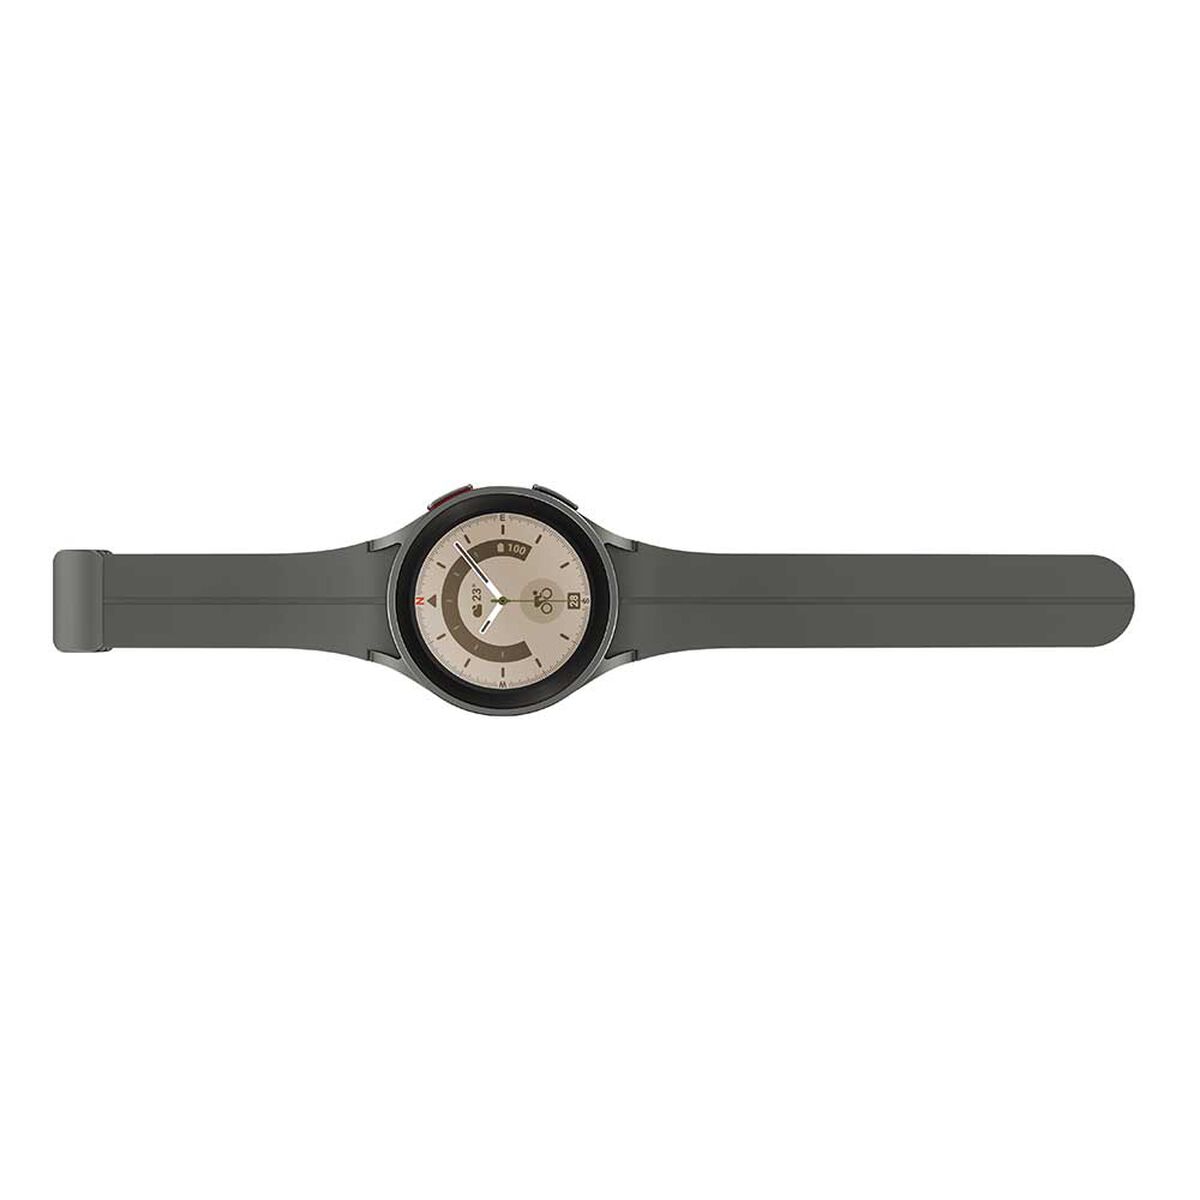 Smartwatch Samsung Galaxy Watch 5 Pro 45mm Titanium